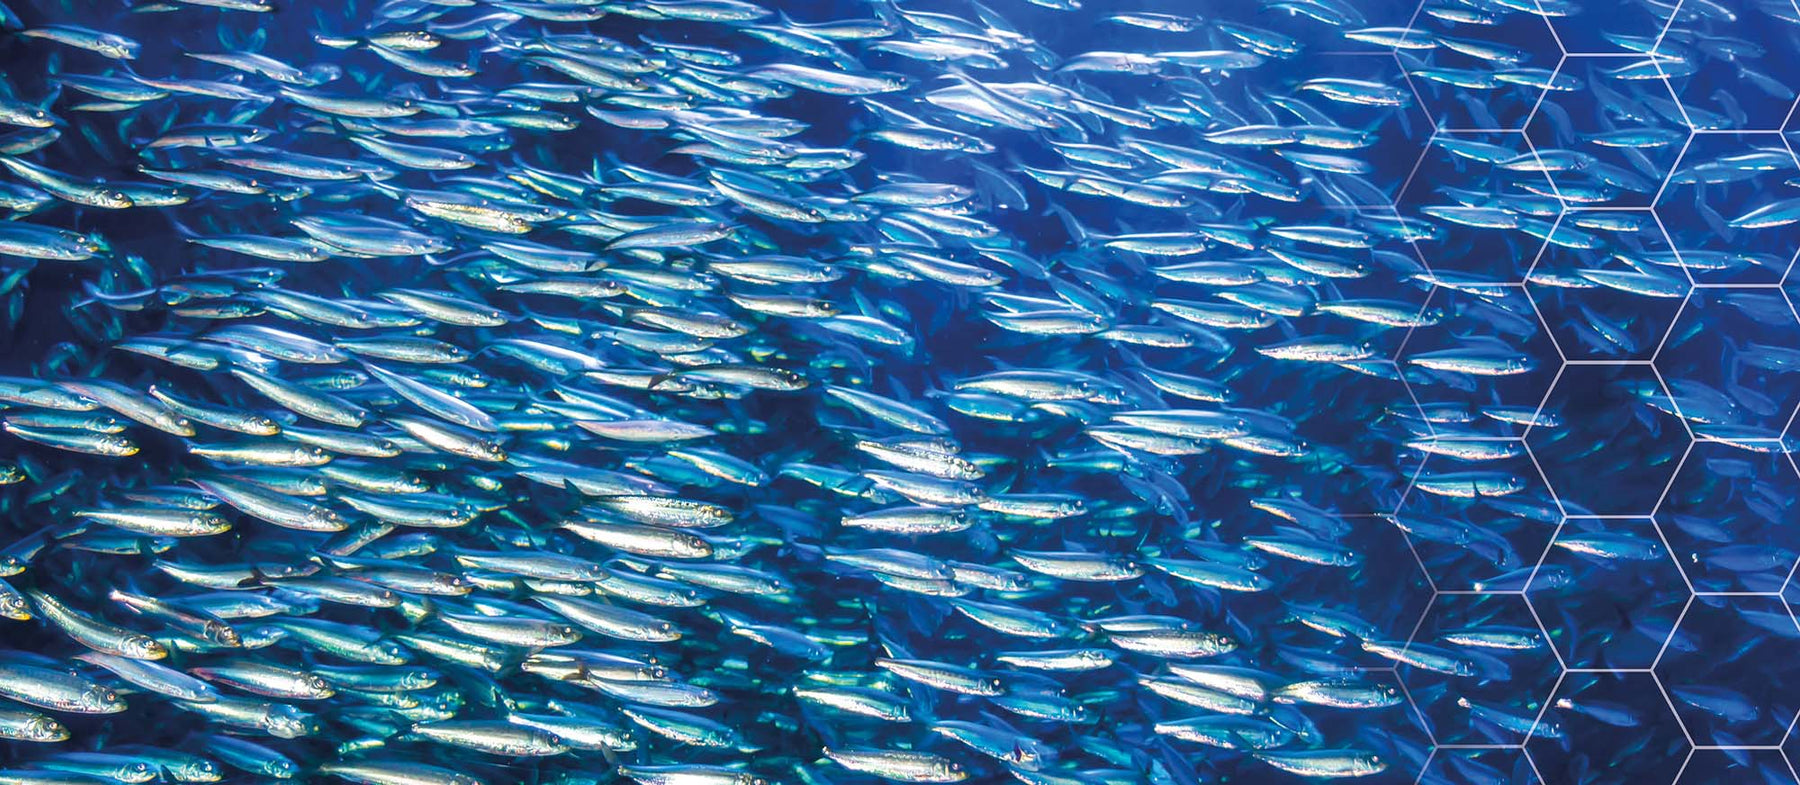 ORIVO takaa kalaöljyn jäljitettävyyden - ja siten myös turvallisuuden!